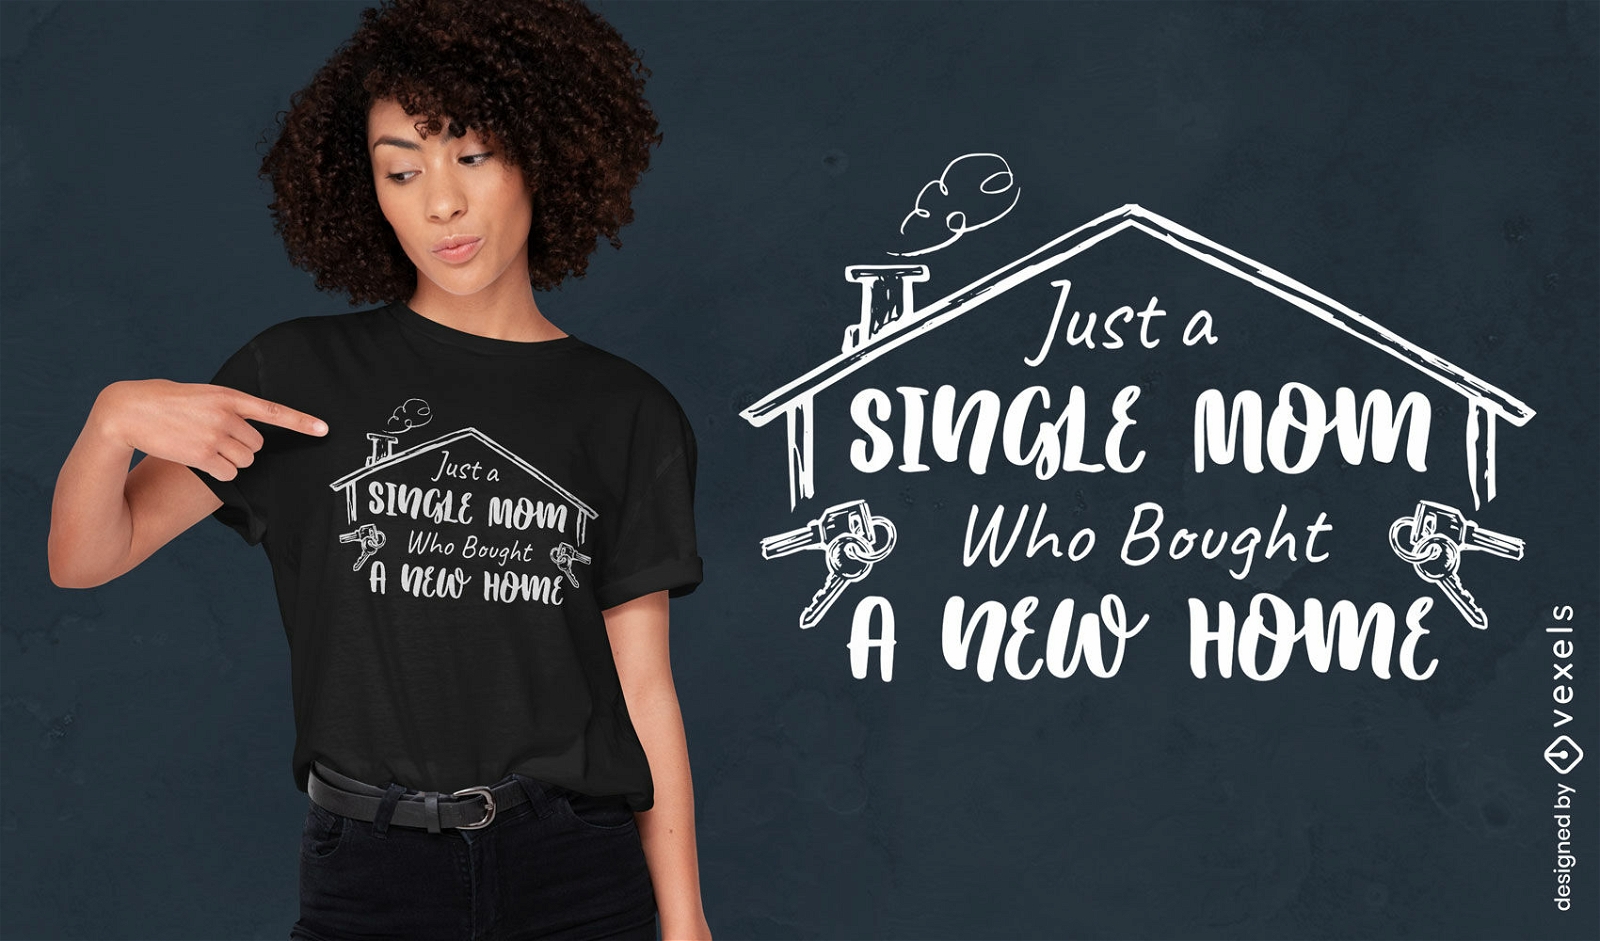 Dise?o de camiseta de nueva casa de madre soltera.